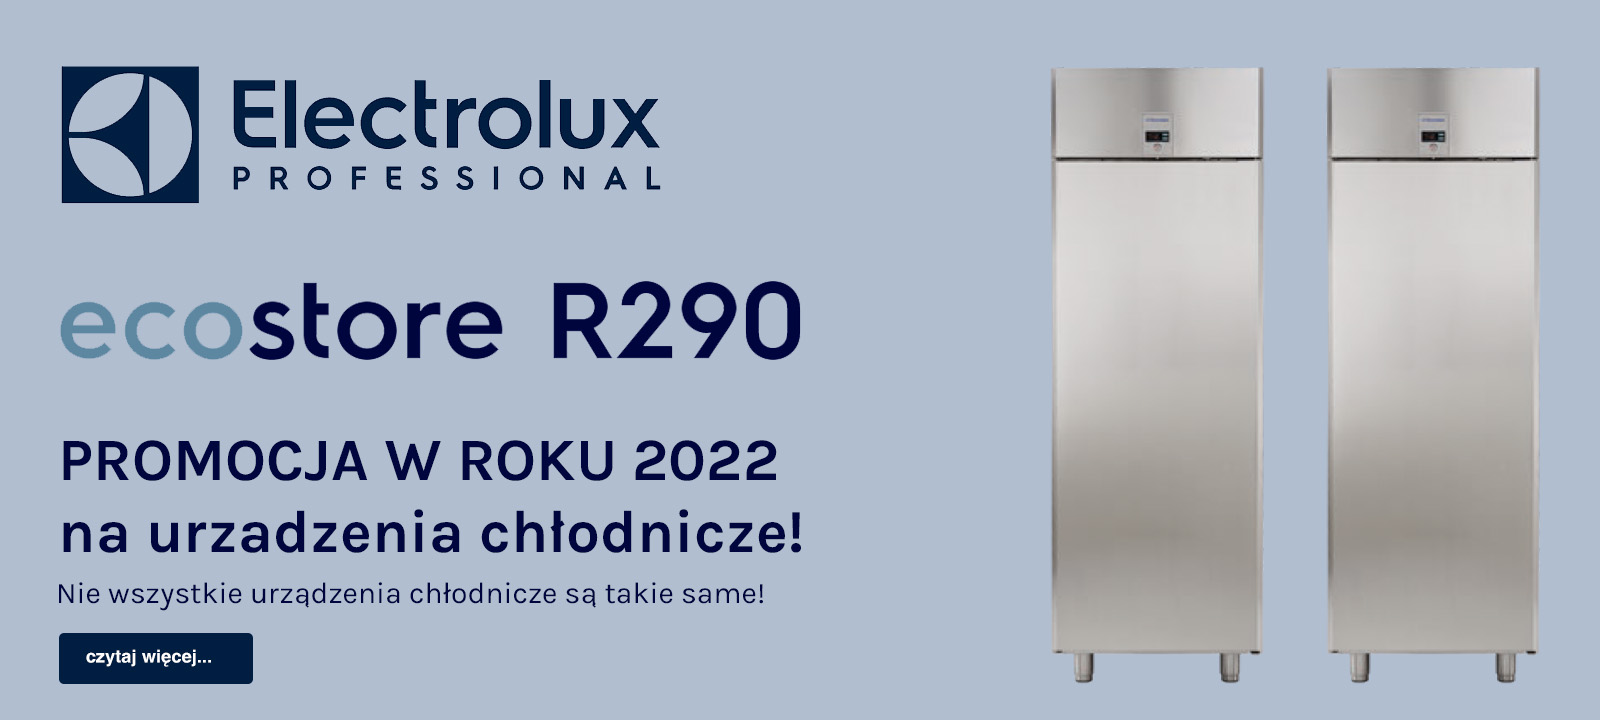 PROMOCJA 2022 - na urządzenia chłodnicze od Electrolux Professional